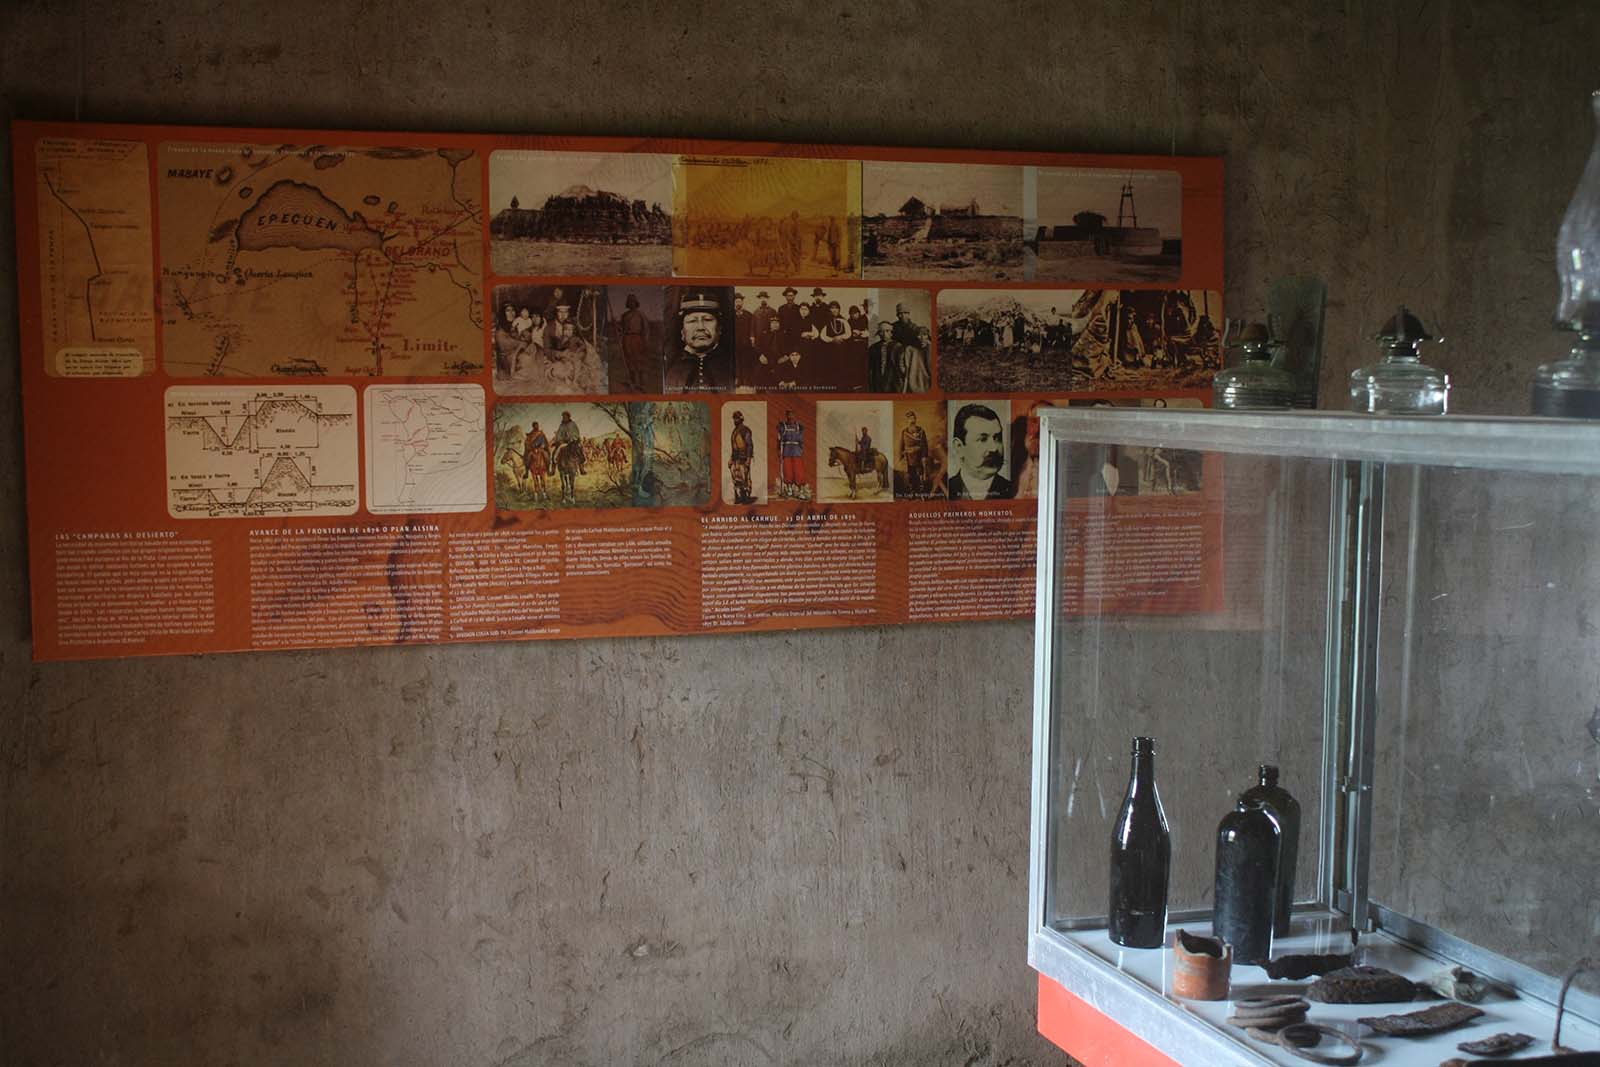 Museo Casa de la Última Fortinera - Dr. Adolfo Alsina - Carhué